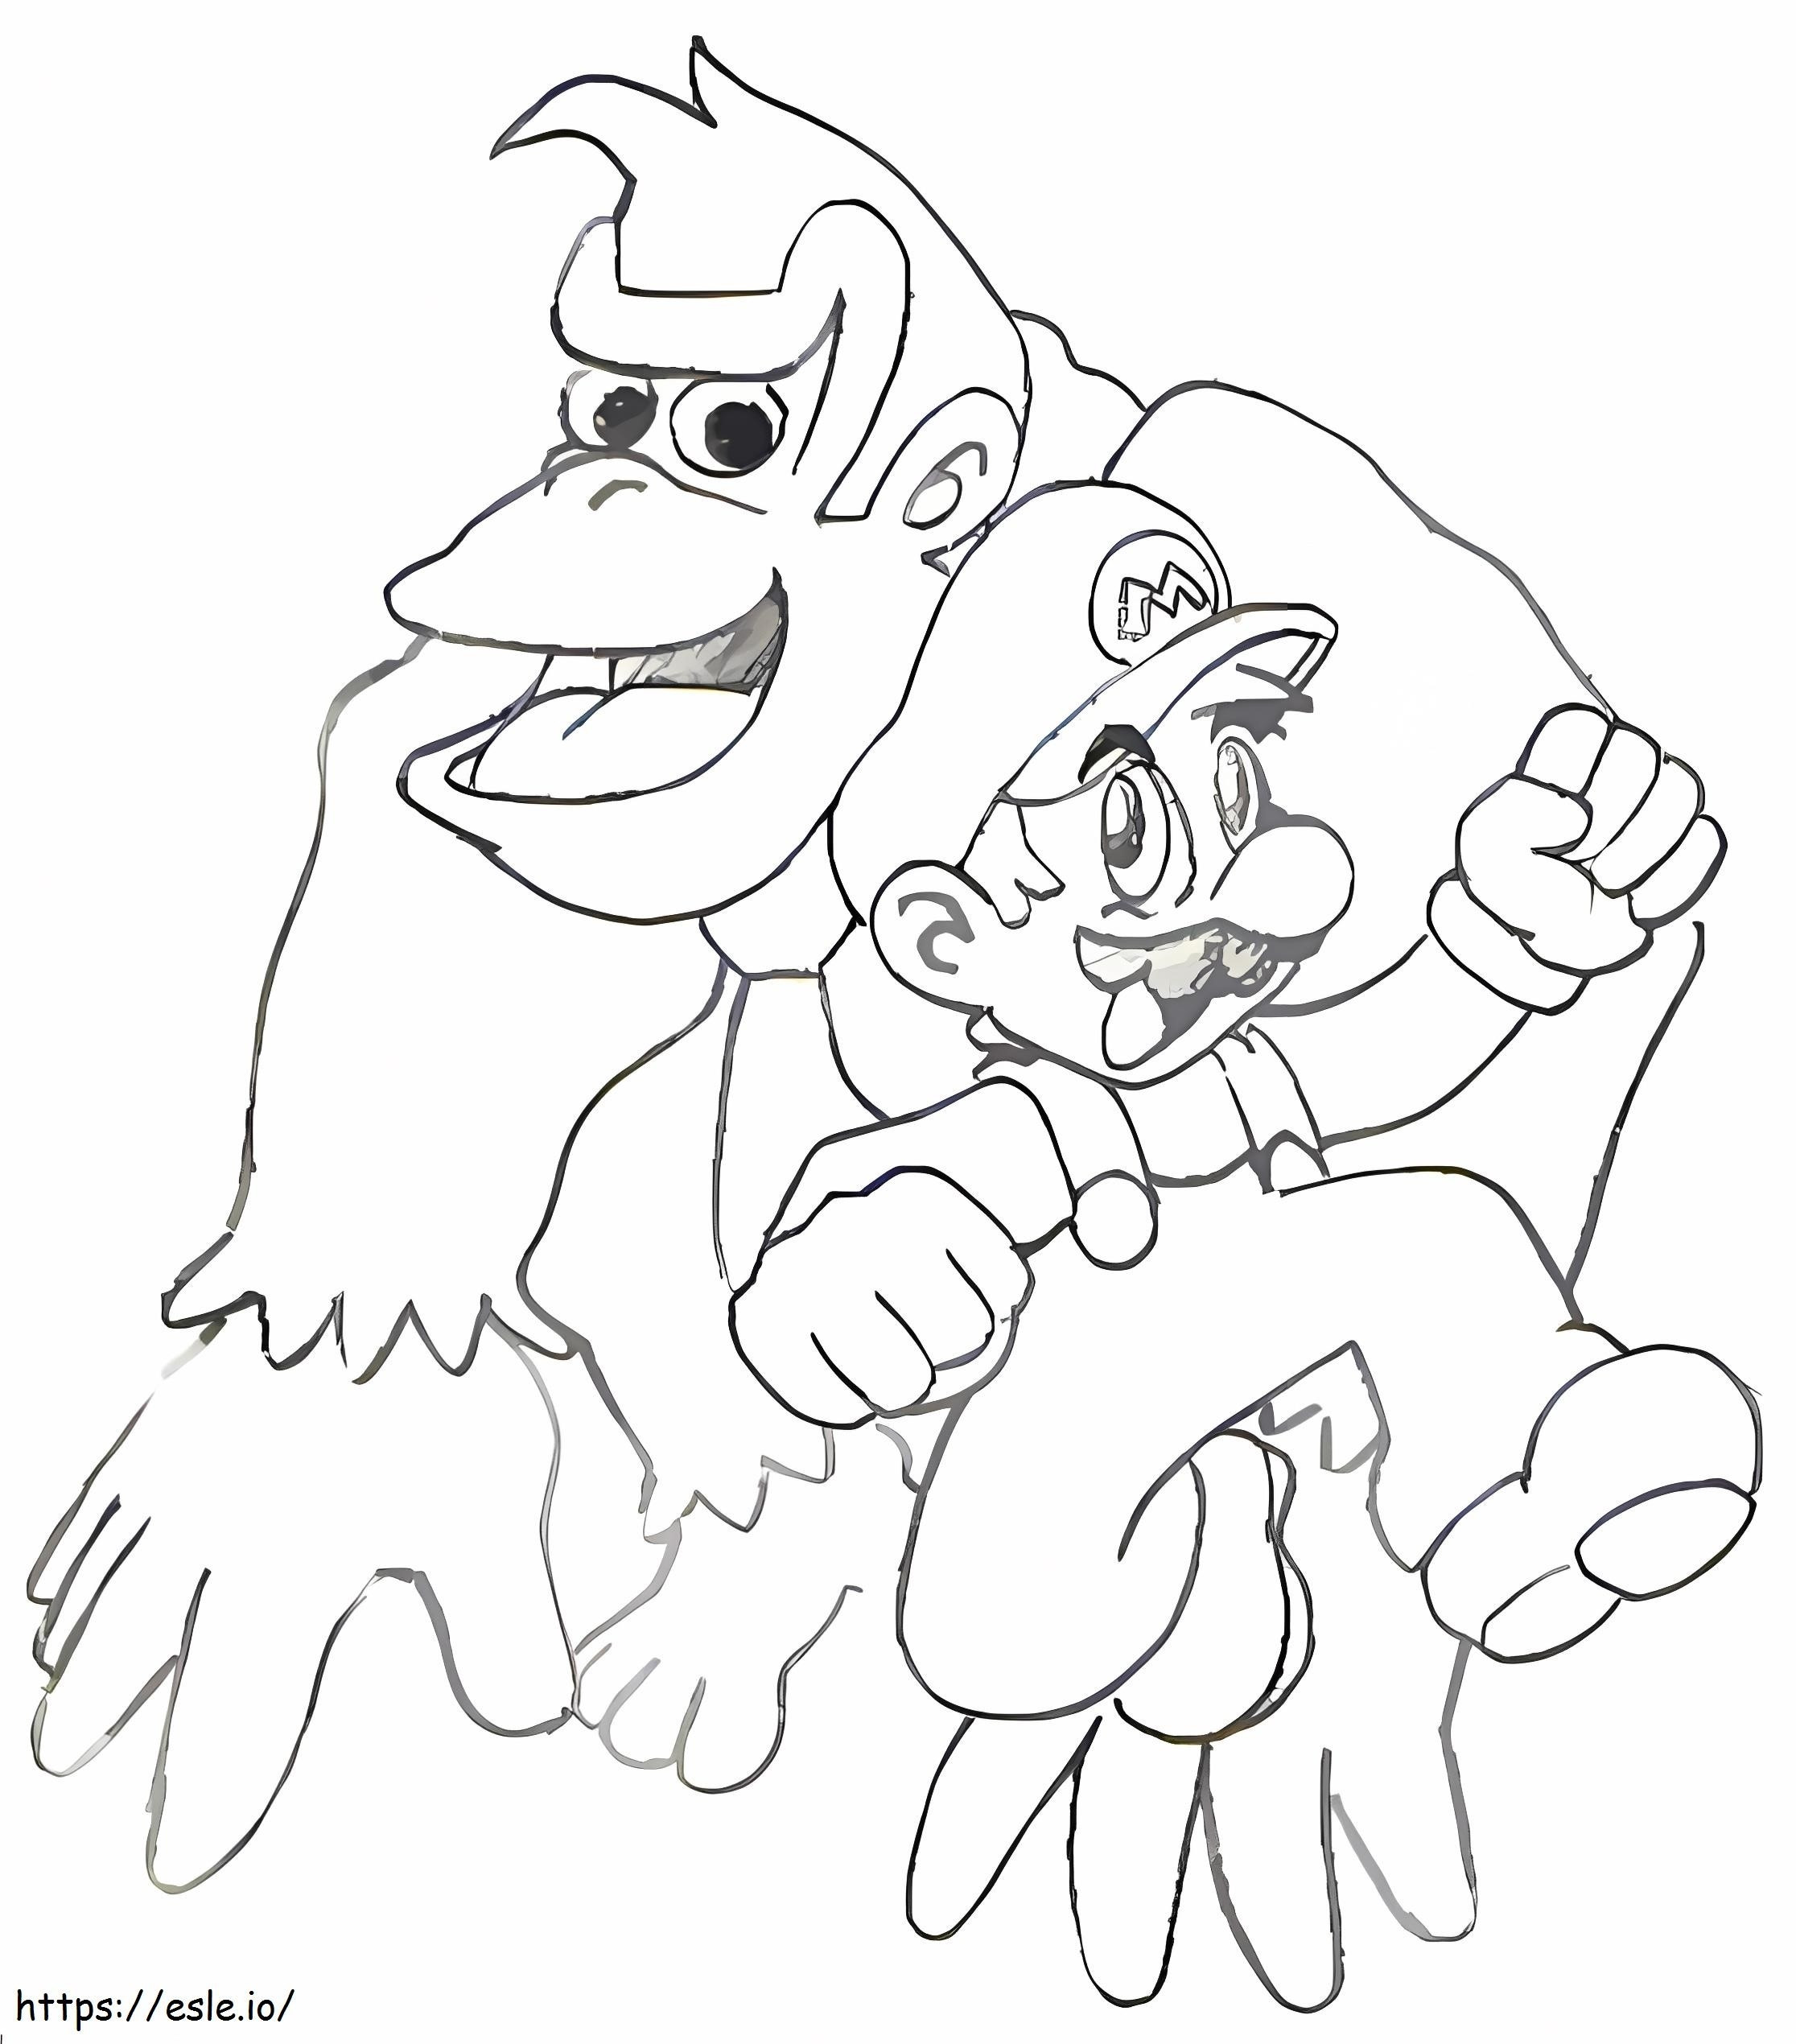 Mario e Donkey Kong da colorare